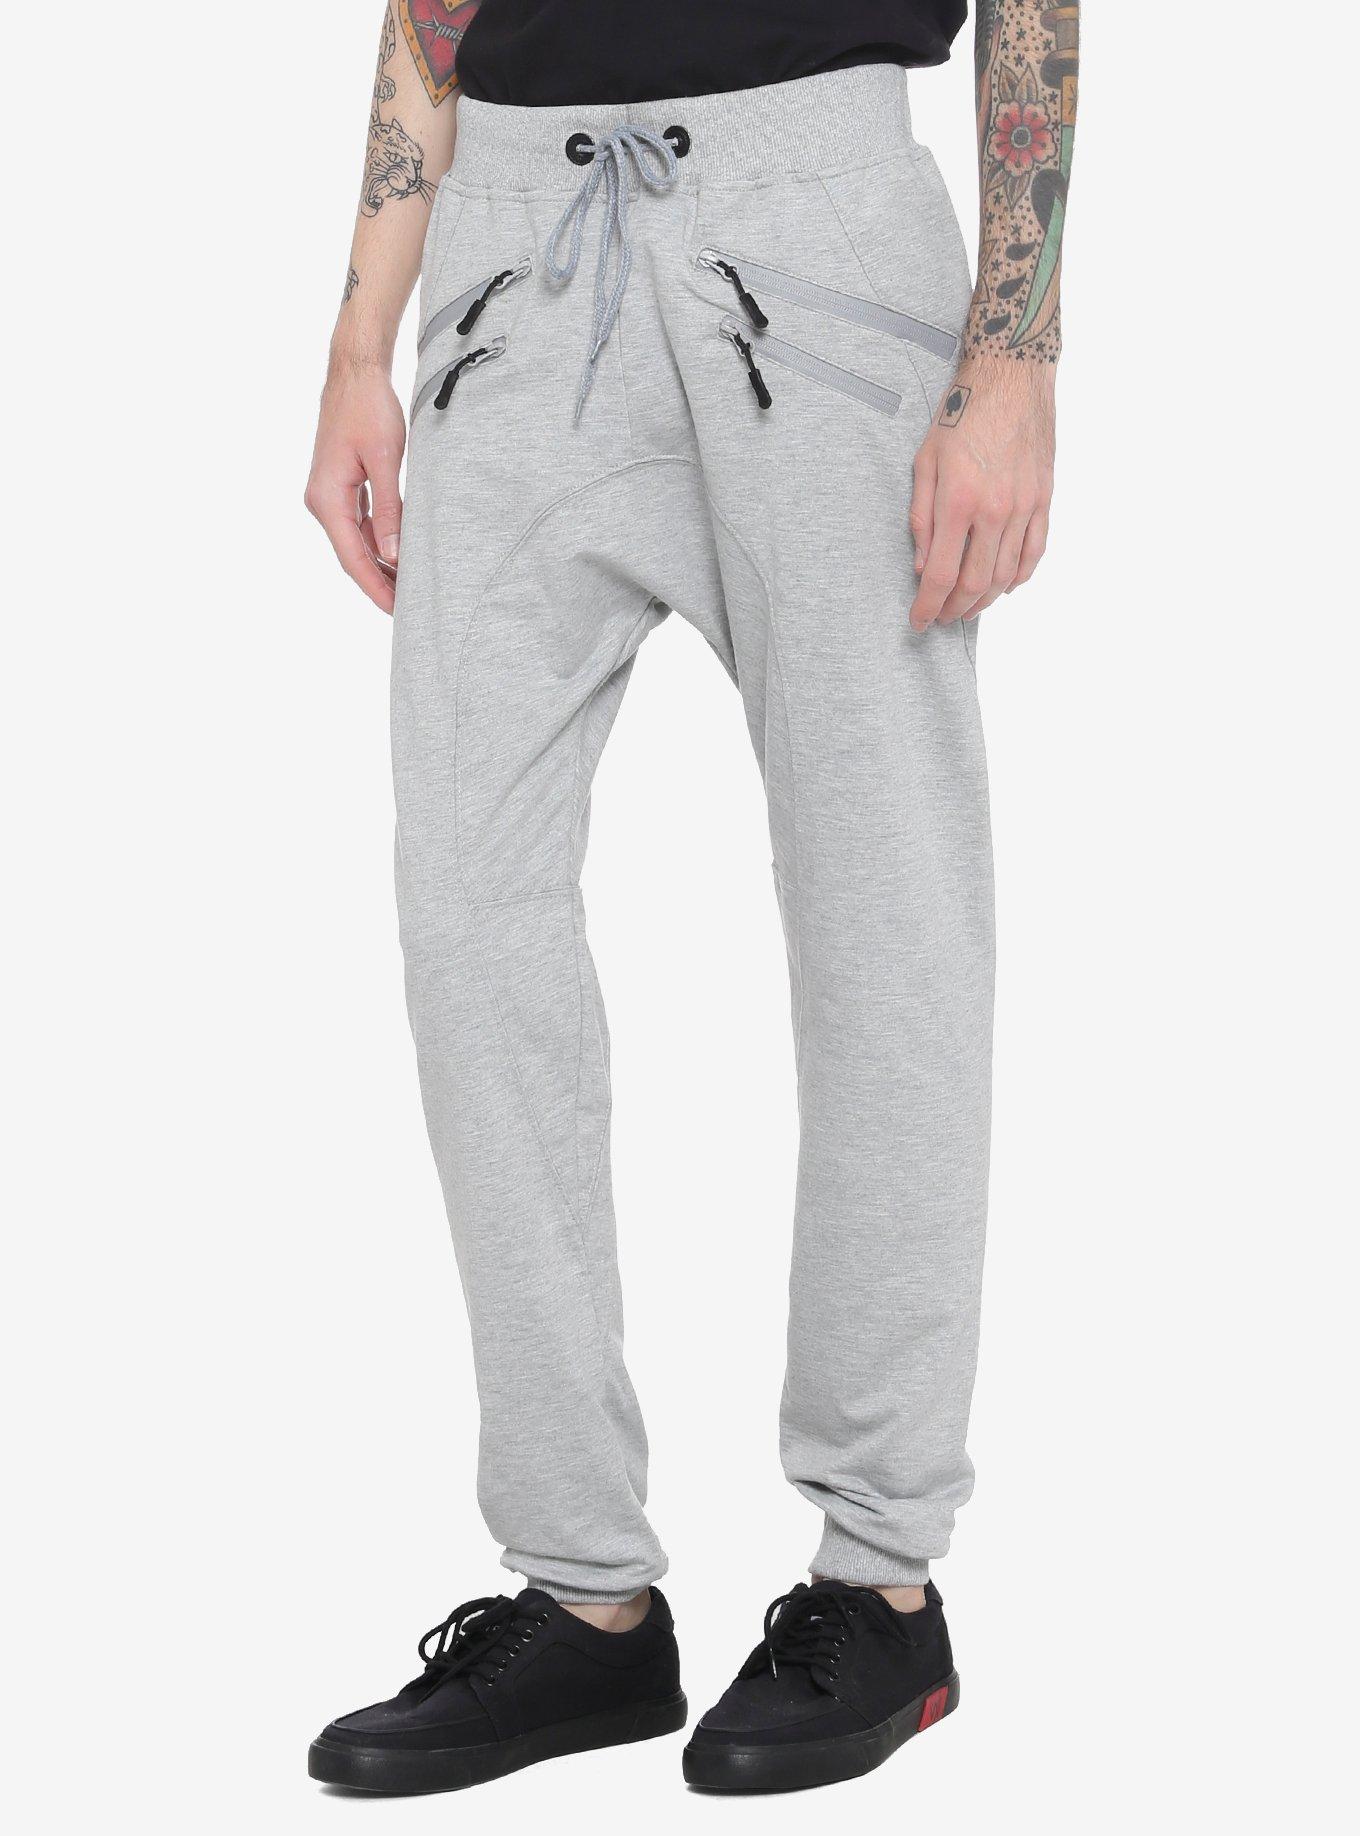 Grey Zipper Jogger Pants, GREY, hi-res